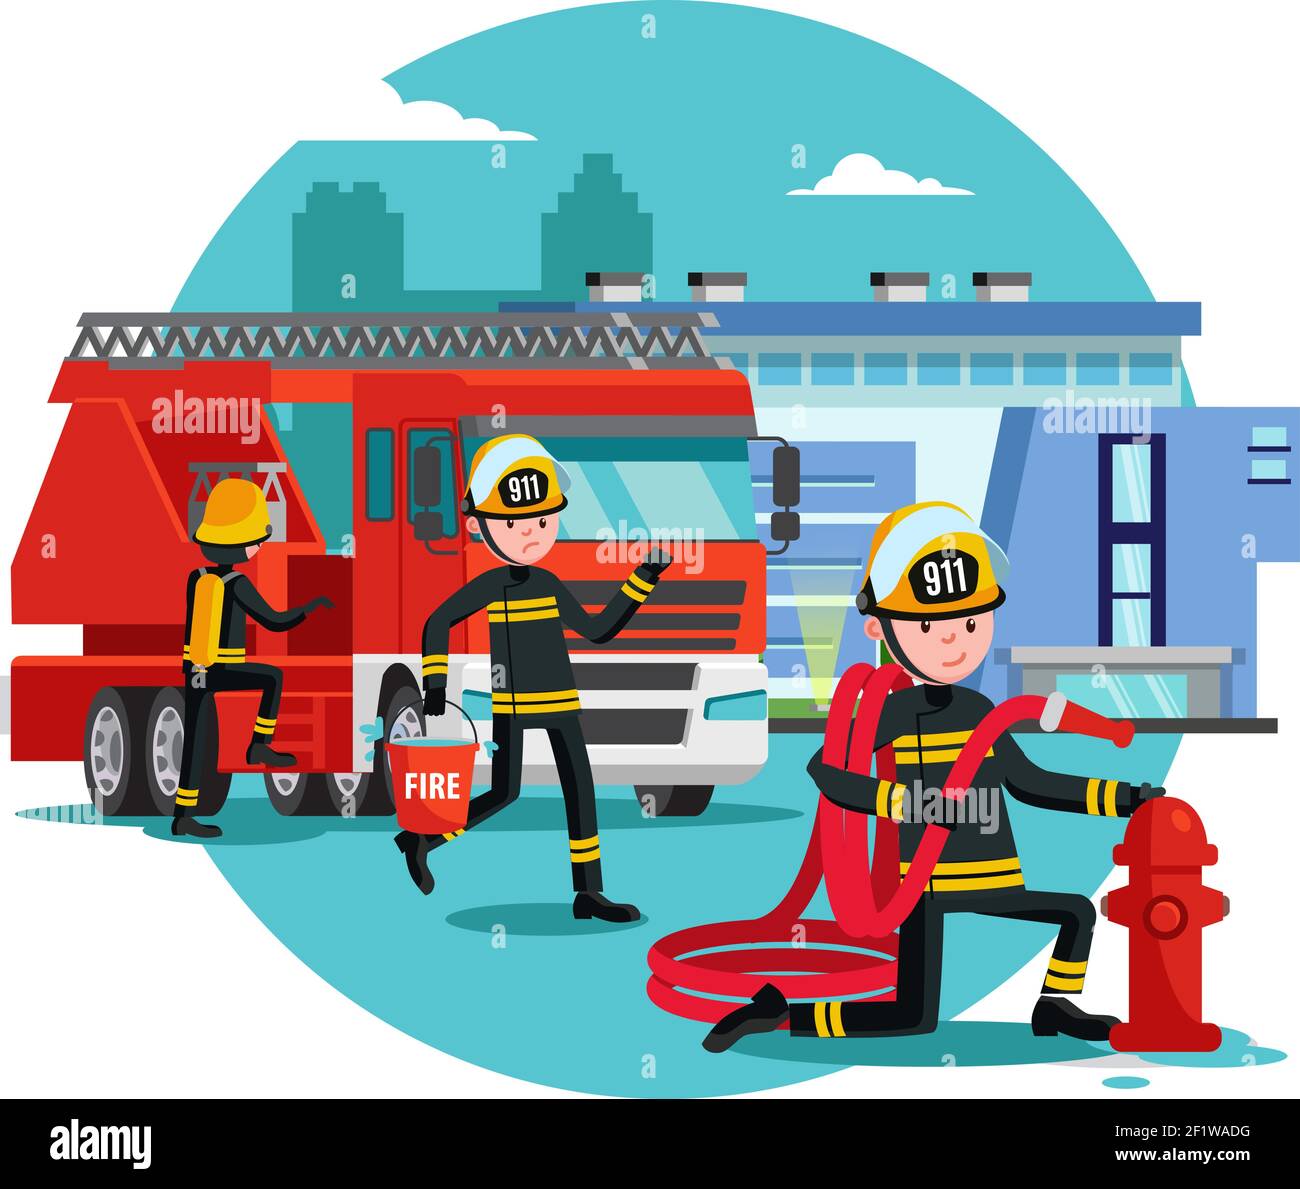 Feuerwehr-Werkzeuge, Zubehör und Ausrüstung zur Brandbekämpfung. Abbildung  auf weißem Hintergrund Stockfotografie - Alamy